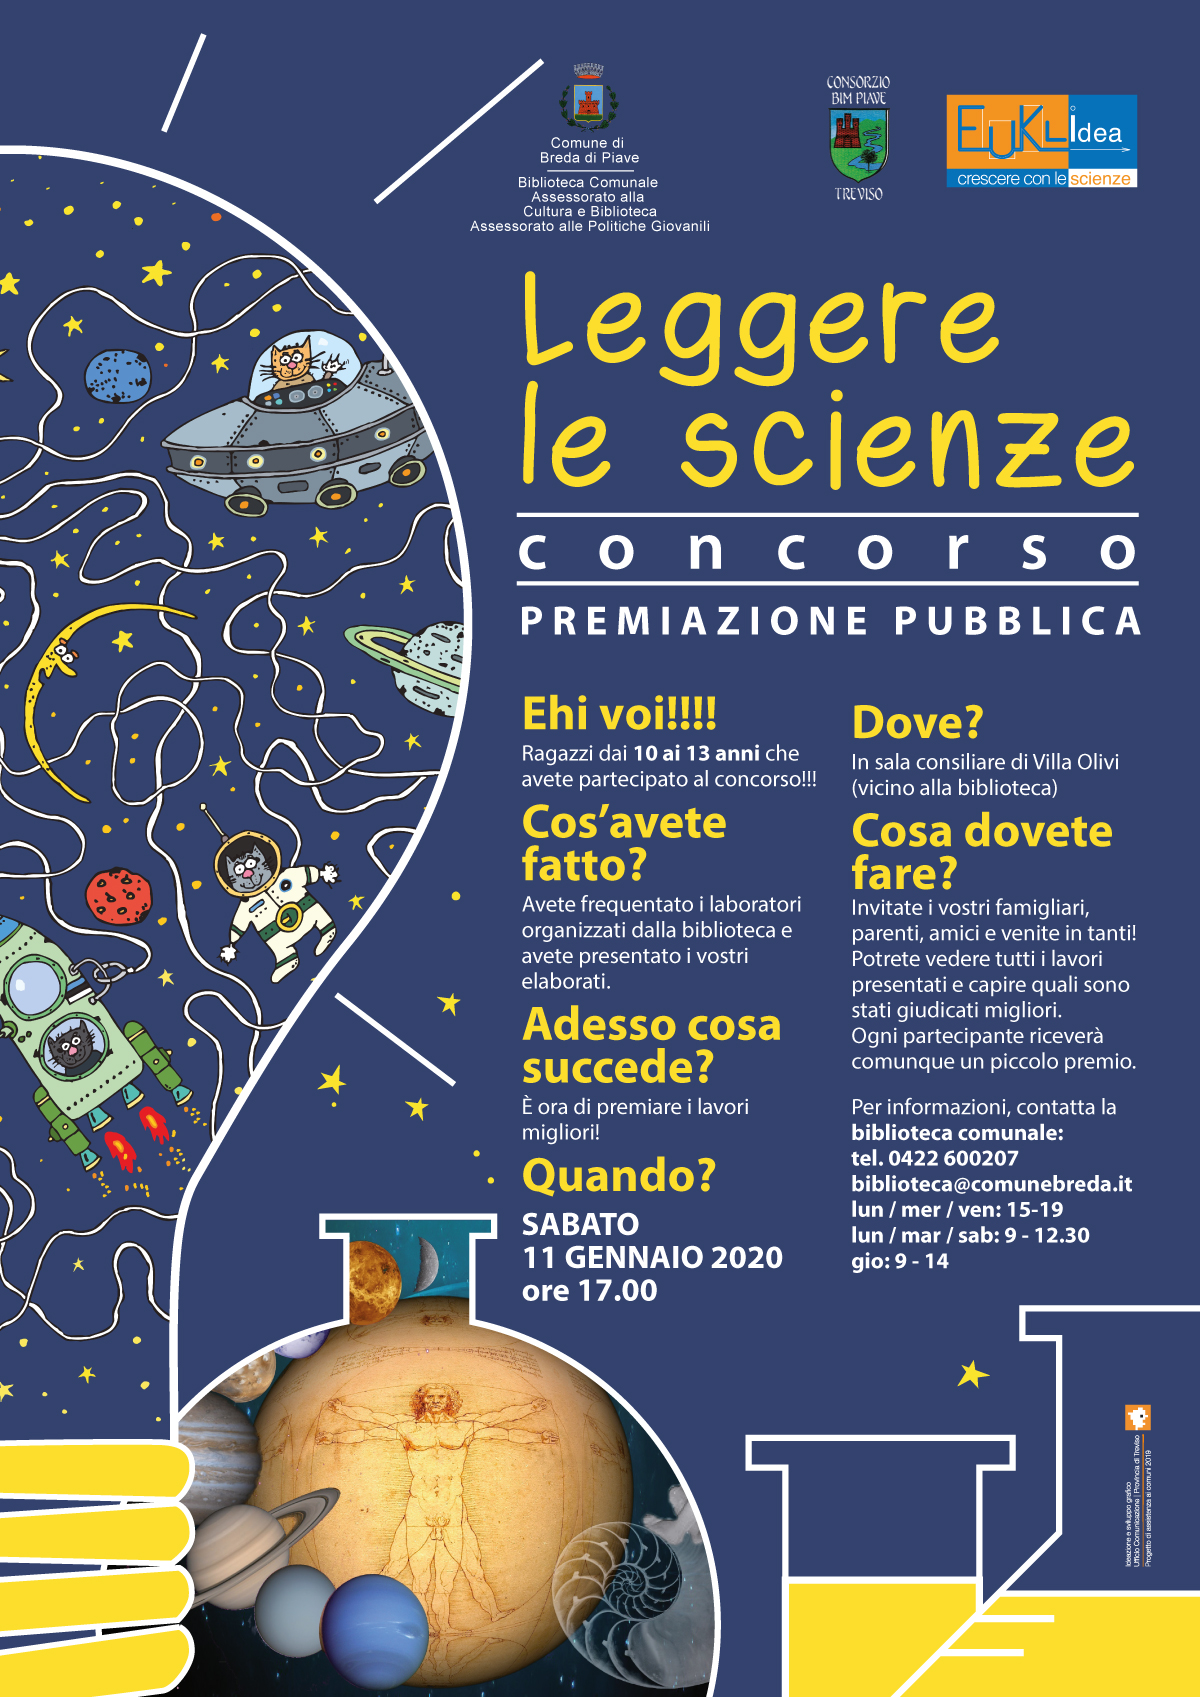 Concorso Leggere le scienze - Premiazione pubblica